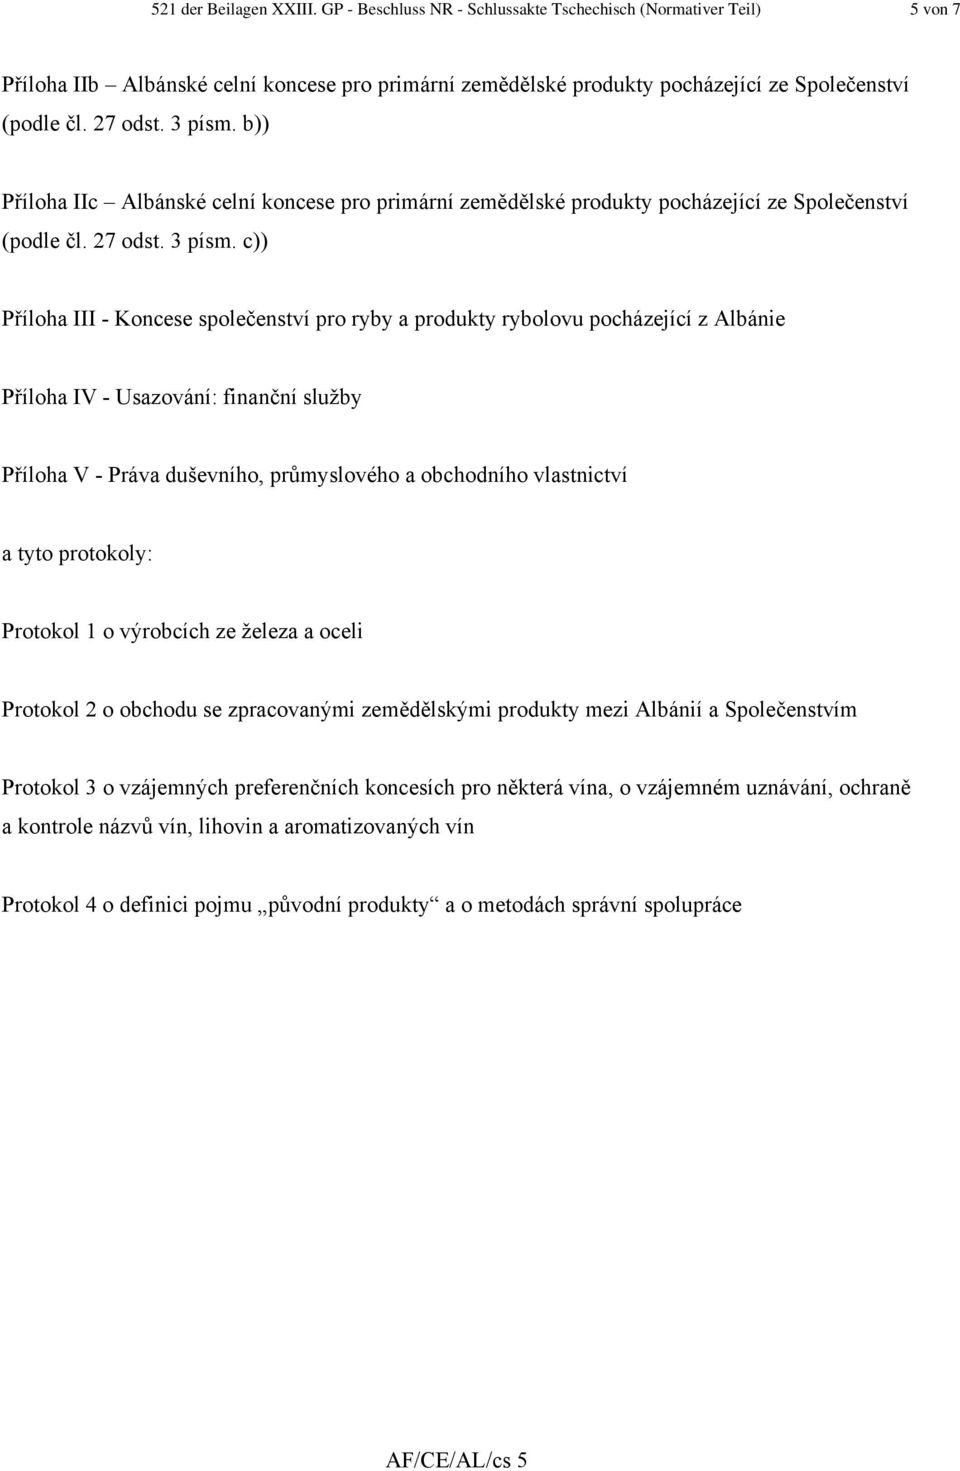 b)) Příloha IIc Albánské celní koncese pro primární zemědělské produkty pocházející ze Společenství (podle čl.